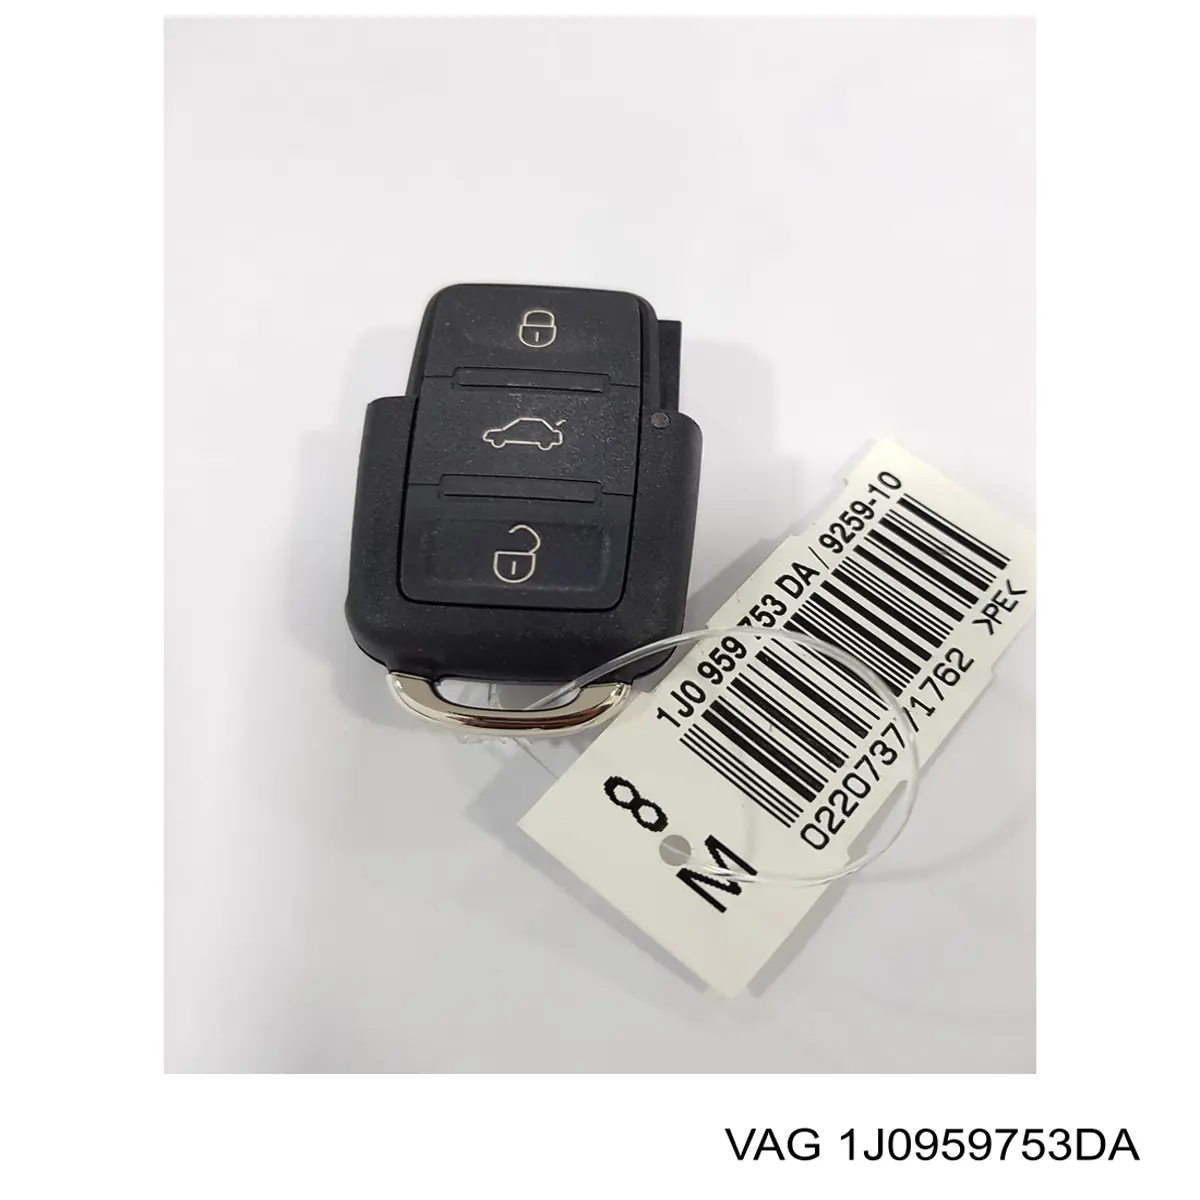 007VW011 B CAR брелок управления сигнализацией